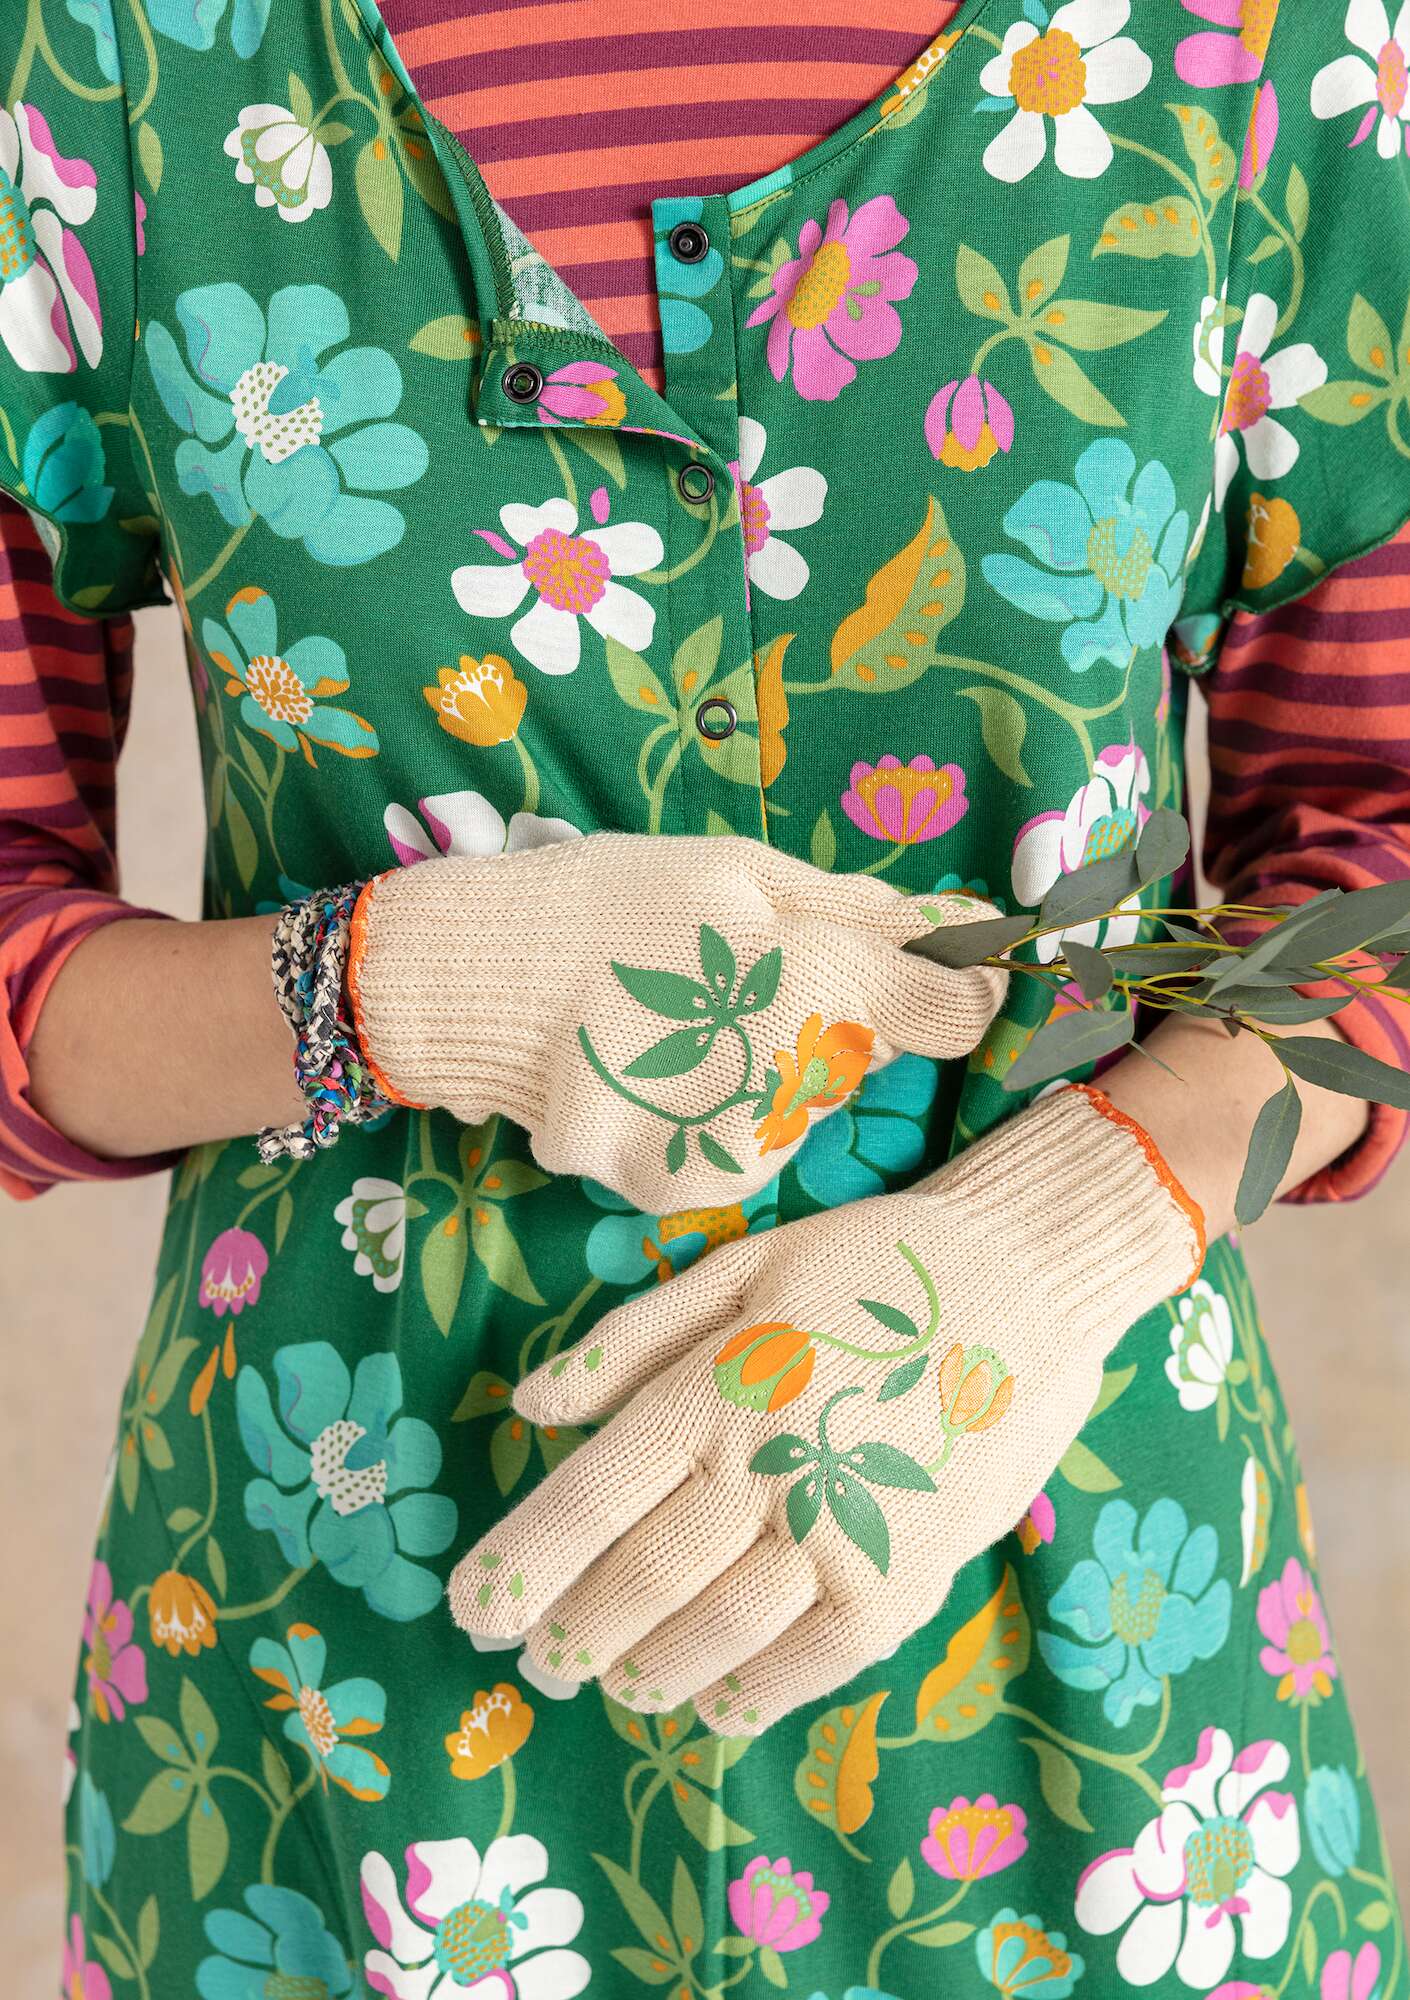 “Gardener” gardening gloves in recycled polyester light sand